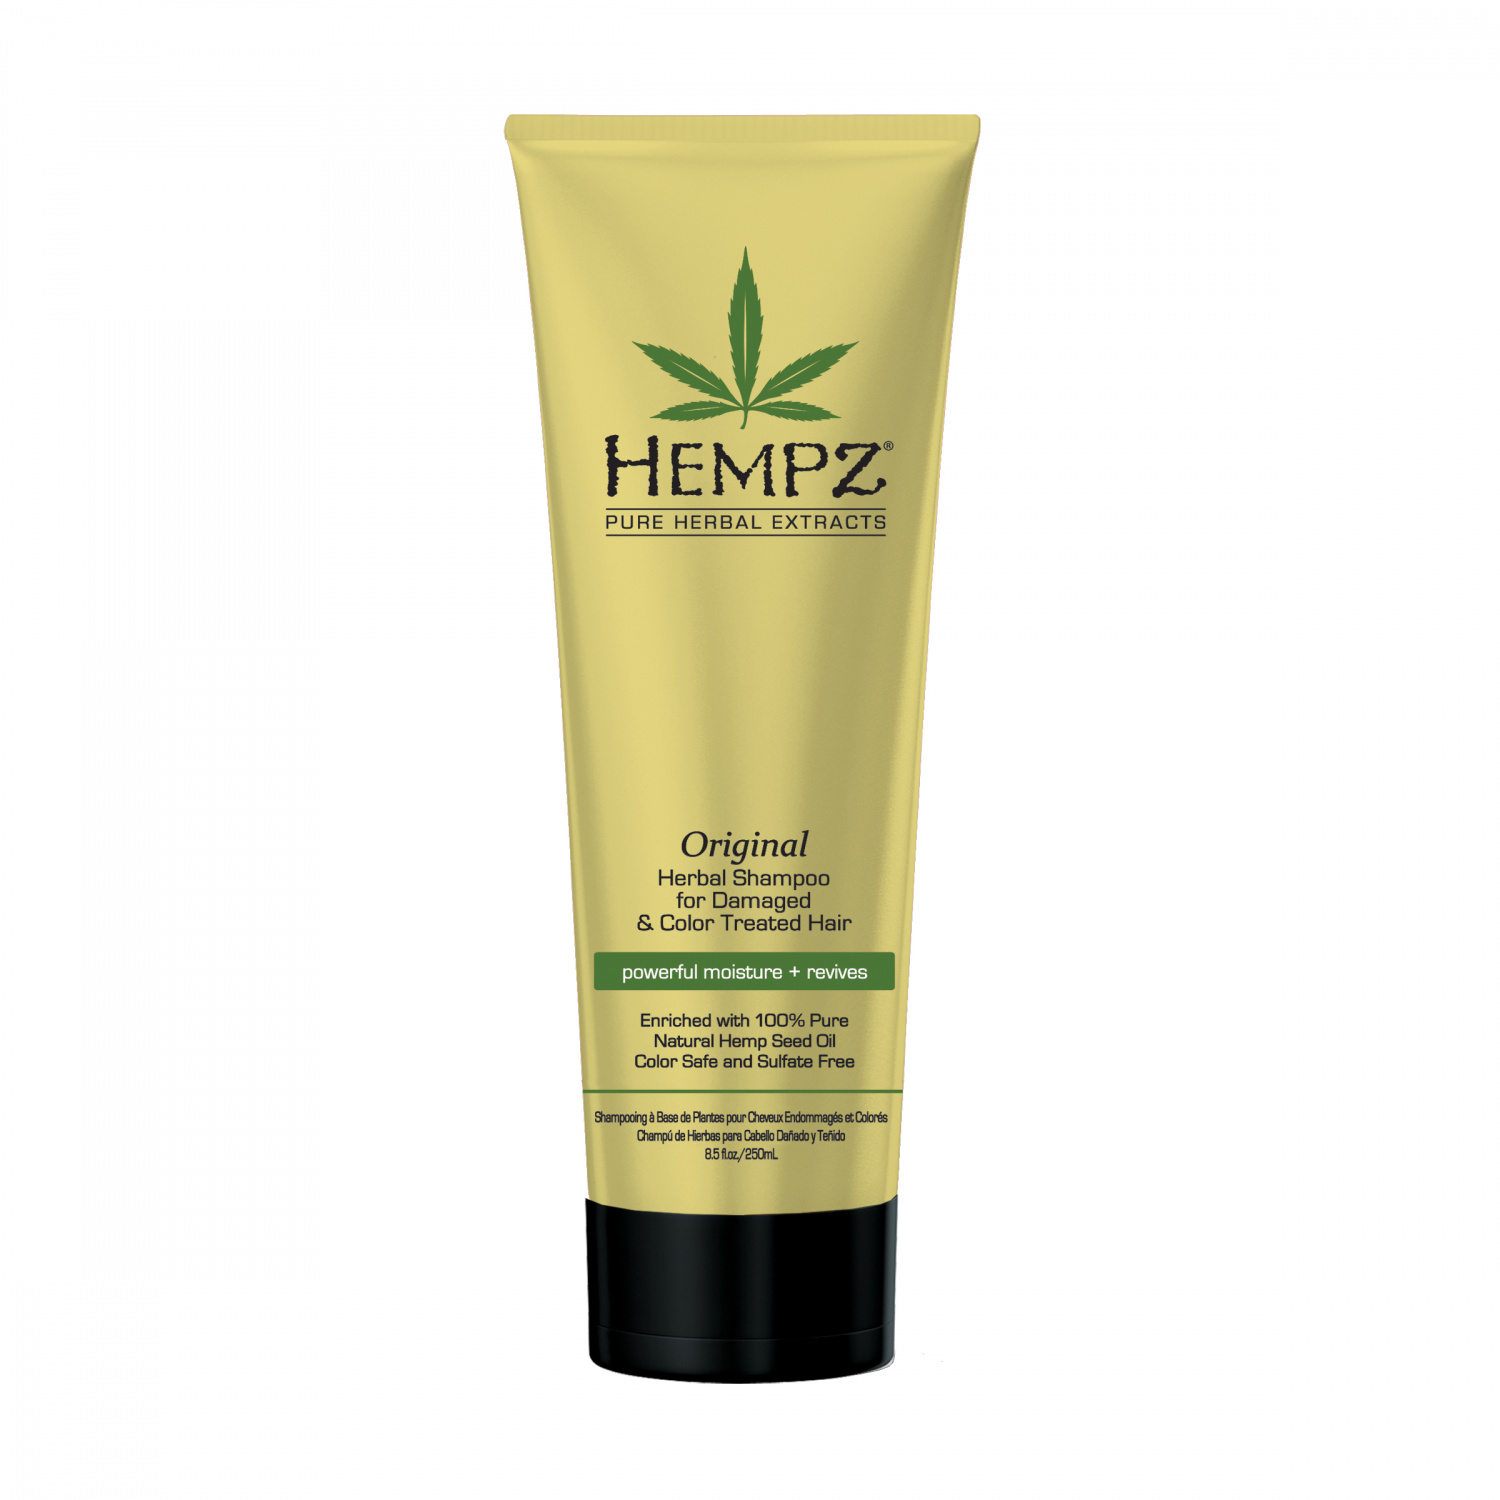 Hempz Original Herbal Shampoo 265ml. - интернет-магазин профессиональной косметики Spadream, изображение 17416